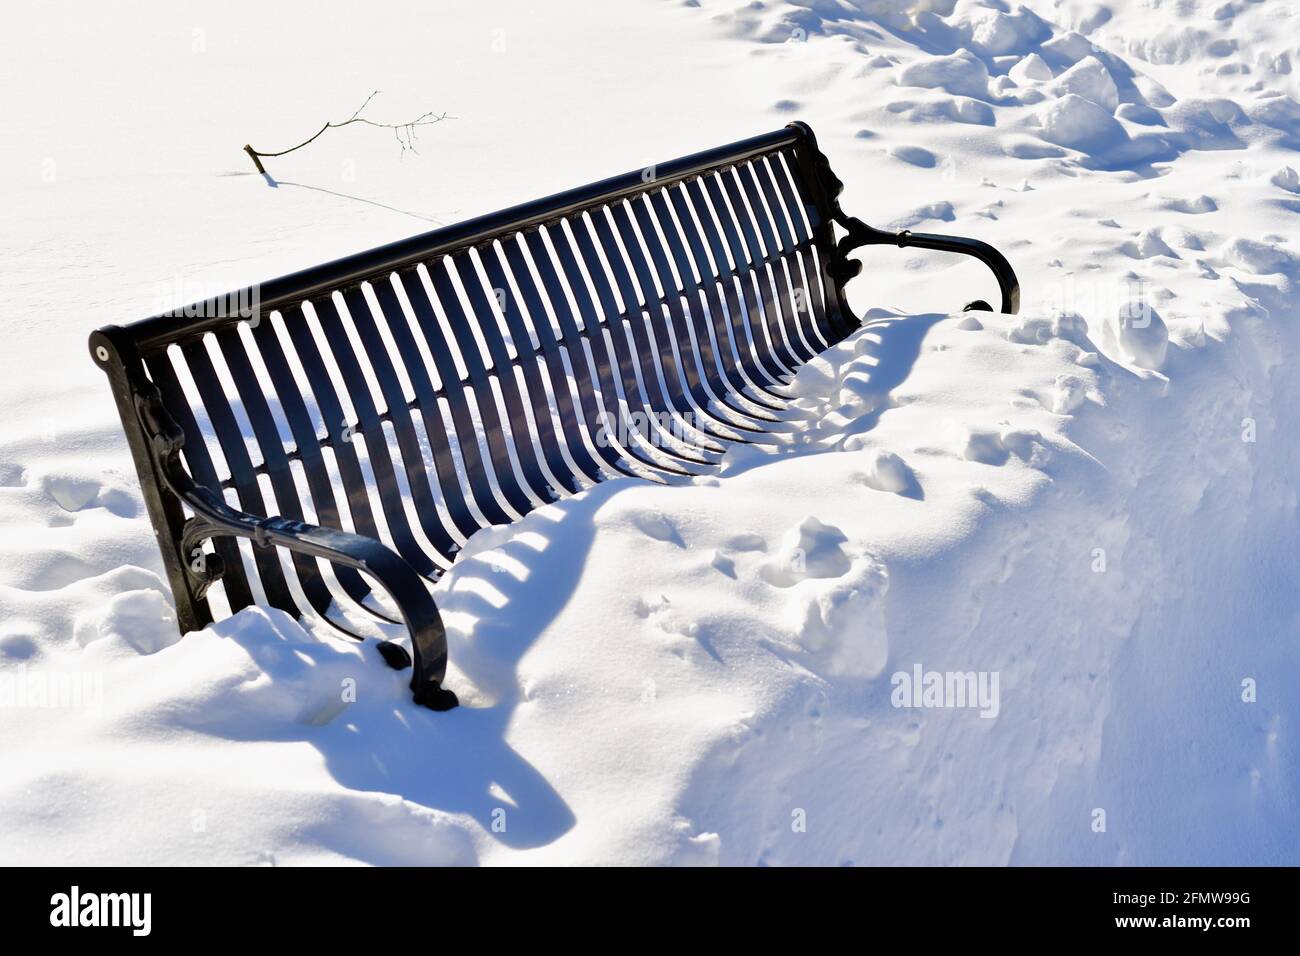 Itasca, Illinois, Stati Uniti. Una panchina del parco isolata da una nevicata accumulata in una luminosa e soleggiata mattina d'inverno. Foto Stock